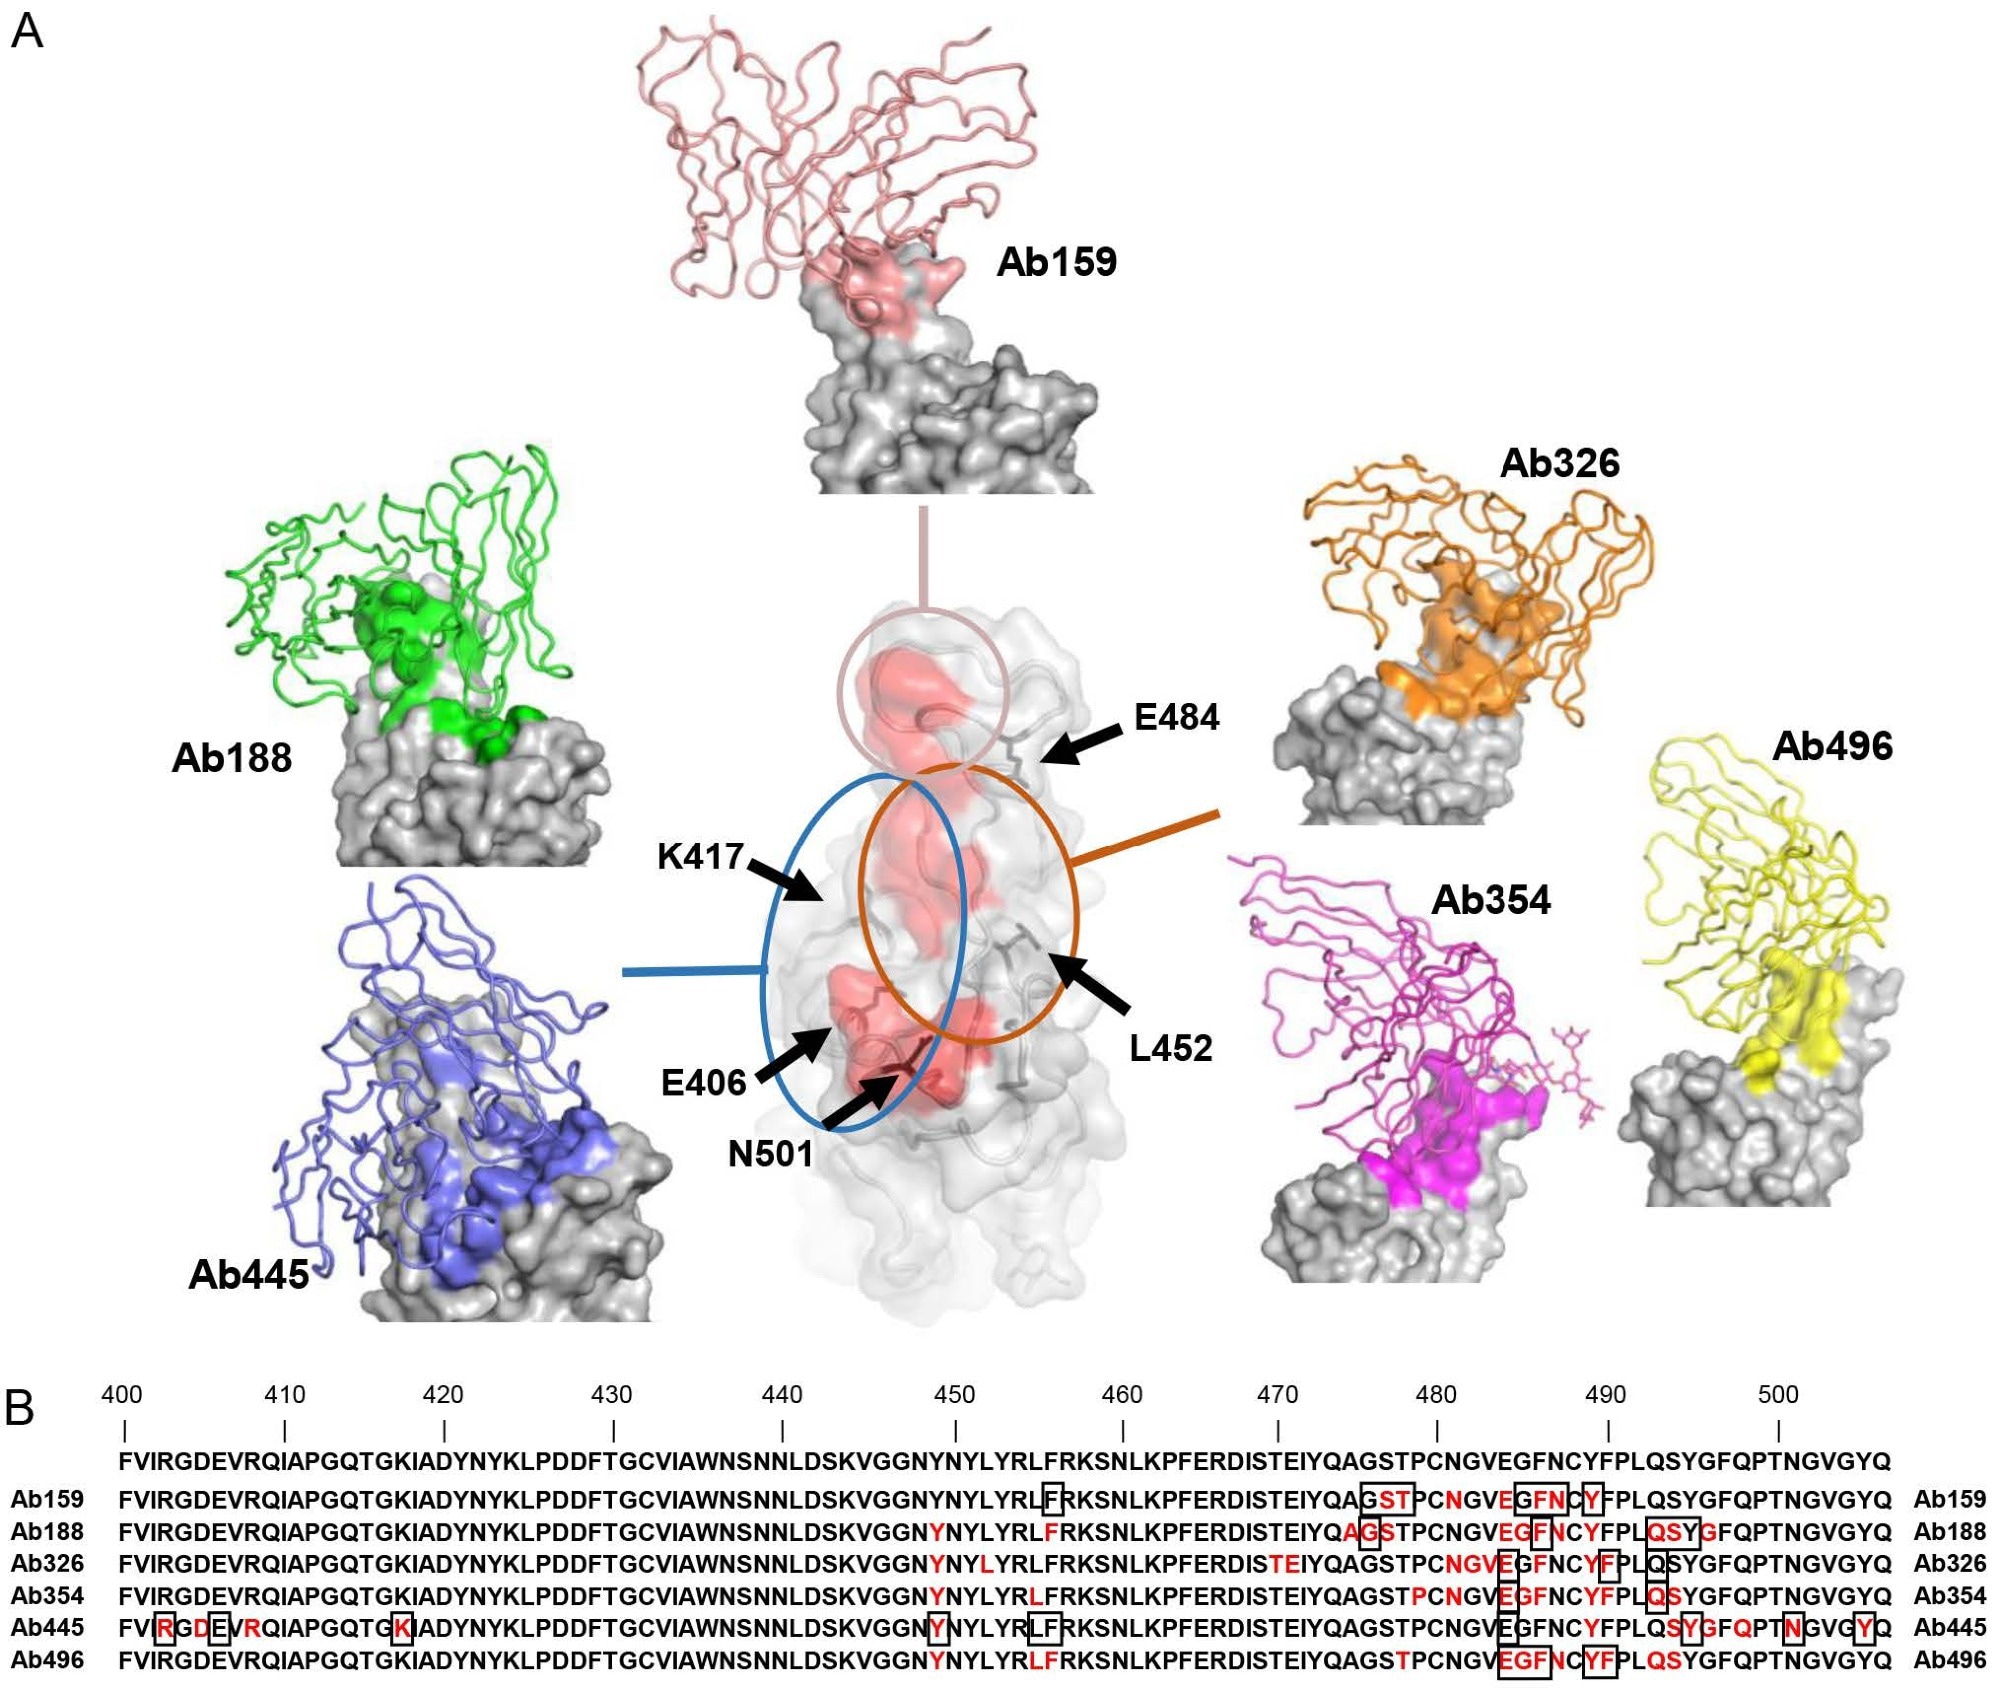 निष्क्रिय एंटीबॉडी की क्रायो-ईएम संरचना (ए) आरबीडी और एबी159, एबी188, एबी326, एबी354, एबी445, और एबी496 की संरचनाएं दिखाई गई हैं।  एंटीबॉडी के केवल चर डोमेन को आरबीडी सतह (ग्रे) पर एक कार्टून ट्यूब (व्यक्तिगत रंग) के रूप में मॉडलिंग और खींचा जाता है, और प्रत्येक एंटीबॉडी का एपिटोप प्रत्येक एंटीबॉडी के समान रंग का होता है।  केंद्रीय RBD में लाल क्षेत्र ACE2 (7A94) (बेंटन एट अल।, 2020) का बाध्यकारी अवशेष है, जो एंटीबॉडी के बाध्यकारी साइटों के बीच संबंध को दर्शाता है, जो मोटे तौर पर तीन समूहों में विभाजित हैं।  प्रमुख अमीनो एसिड की स्थिति को काले तीरों द्वारा दर्शाया गया है।  (बी) स्पाइक के अवशेष 400-506 दिखाए गए हैं।  क्रायो-ईएम द्वारा प्रकट किए गए एपिसोड लाल रंग में रंगे हुए हैं, और चित्र 3क में वर्णित उत्परिवर्तन से प्रभावित अवशेषों को वर्गों में दिखाया गया है।